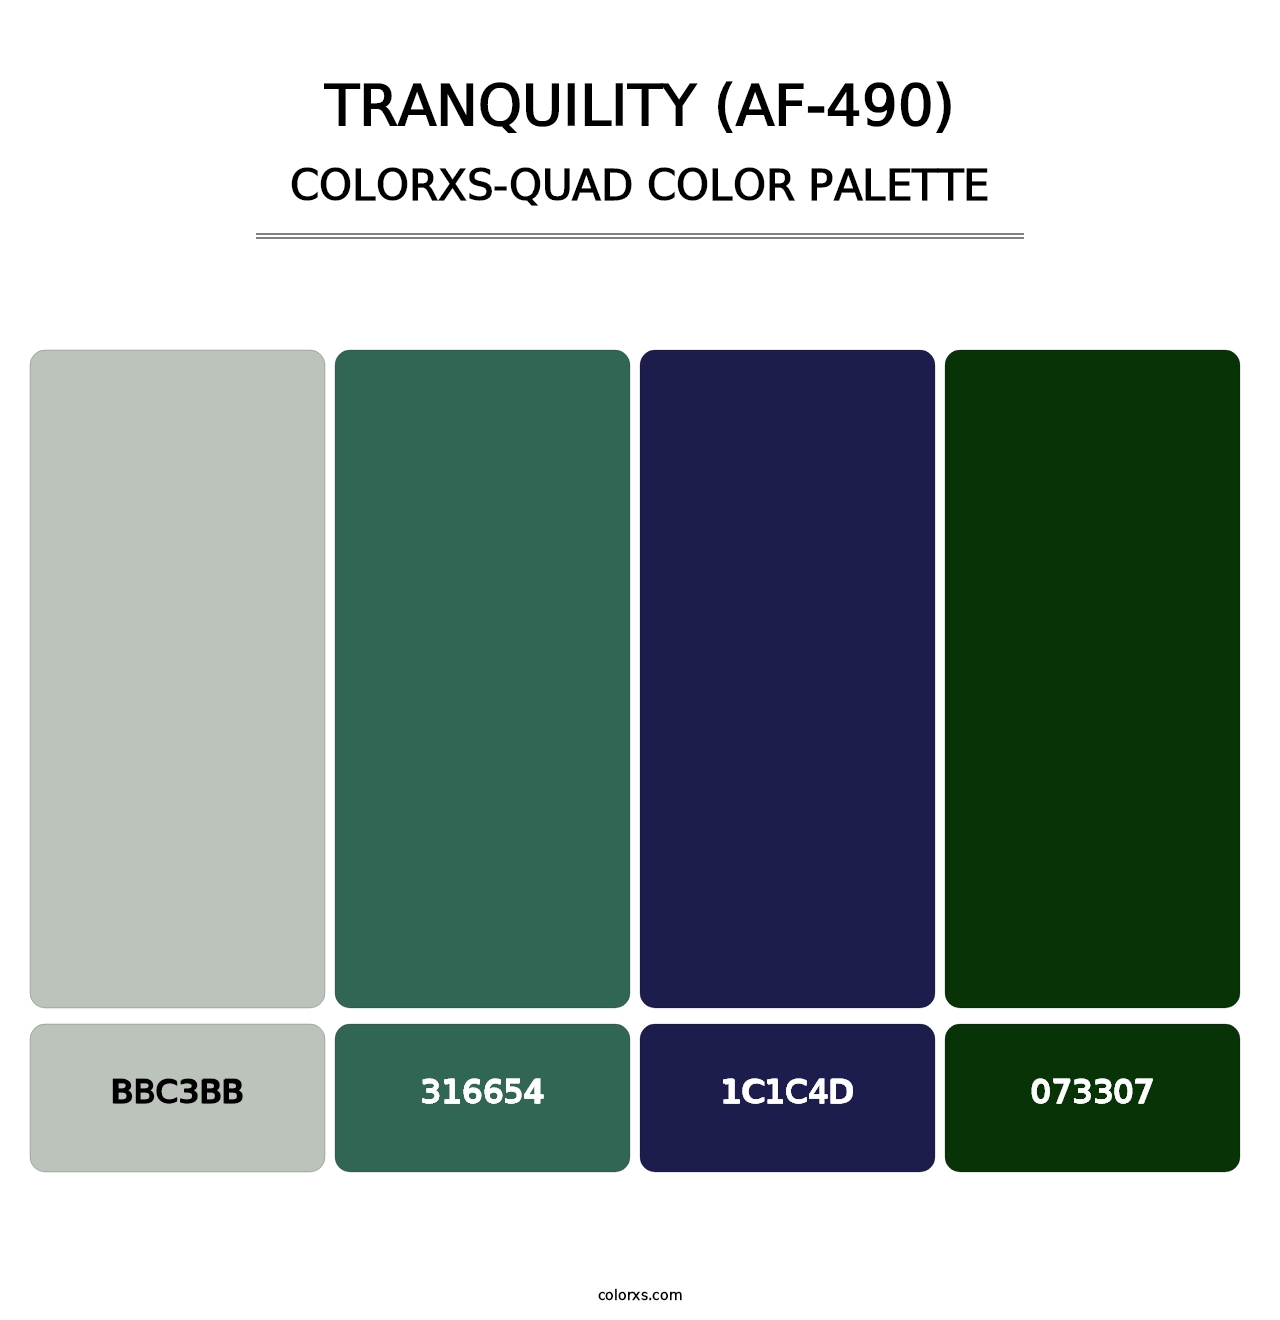 Tranquility (AF-490) - Colorxs Quad Palette